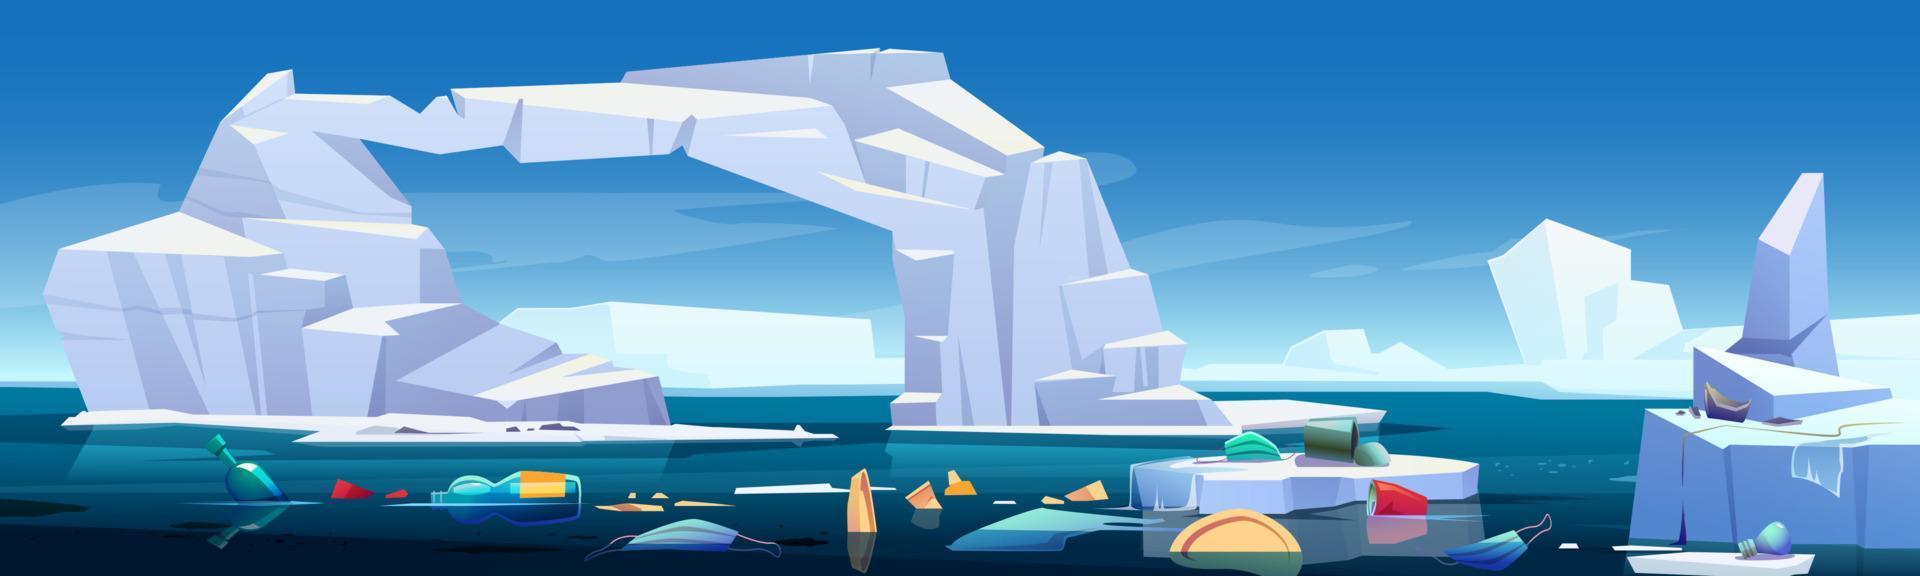 mar ártico con iceberg derritiéndose y basura plástica vector